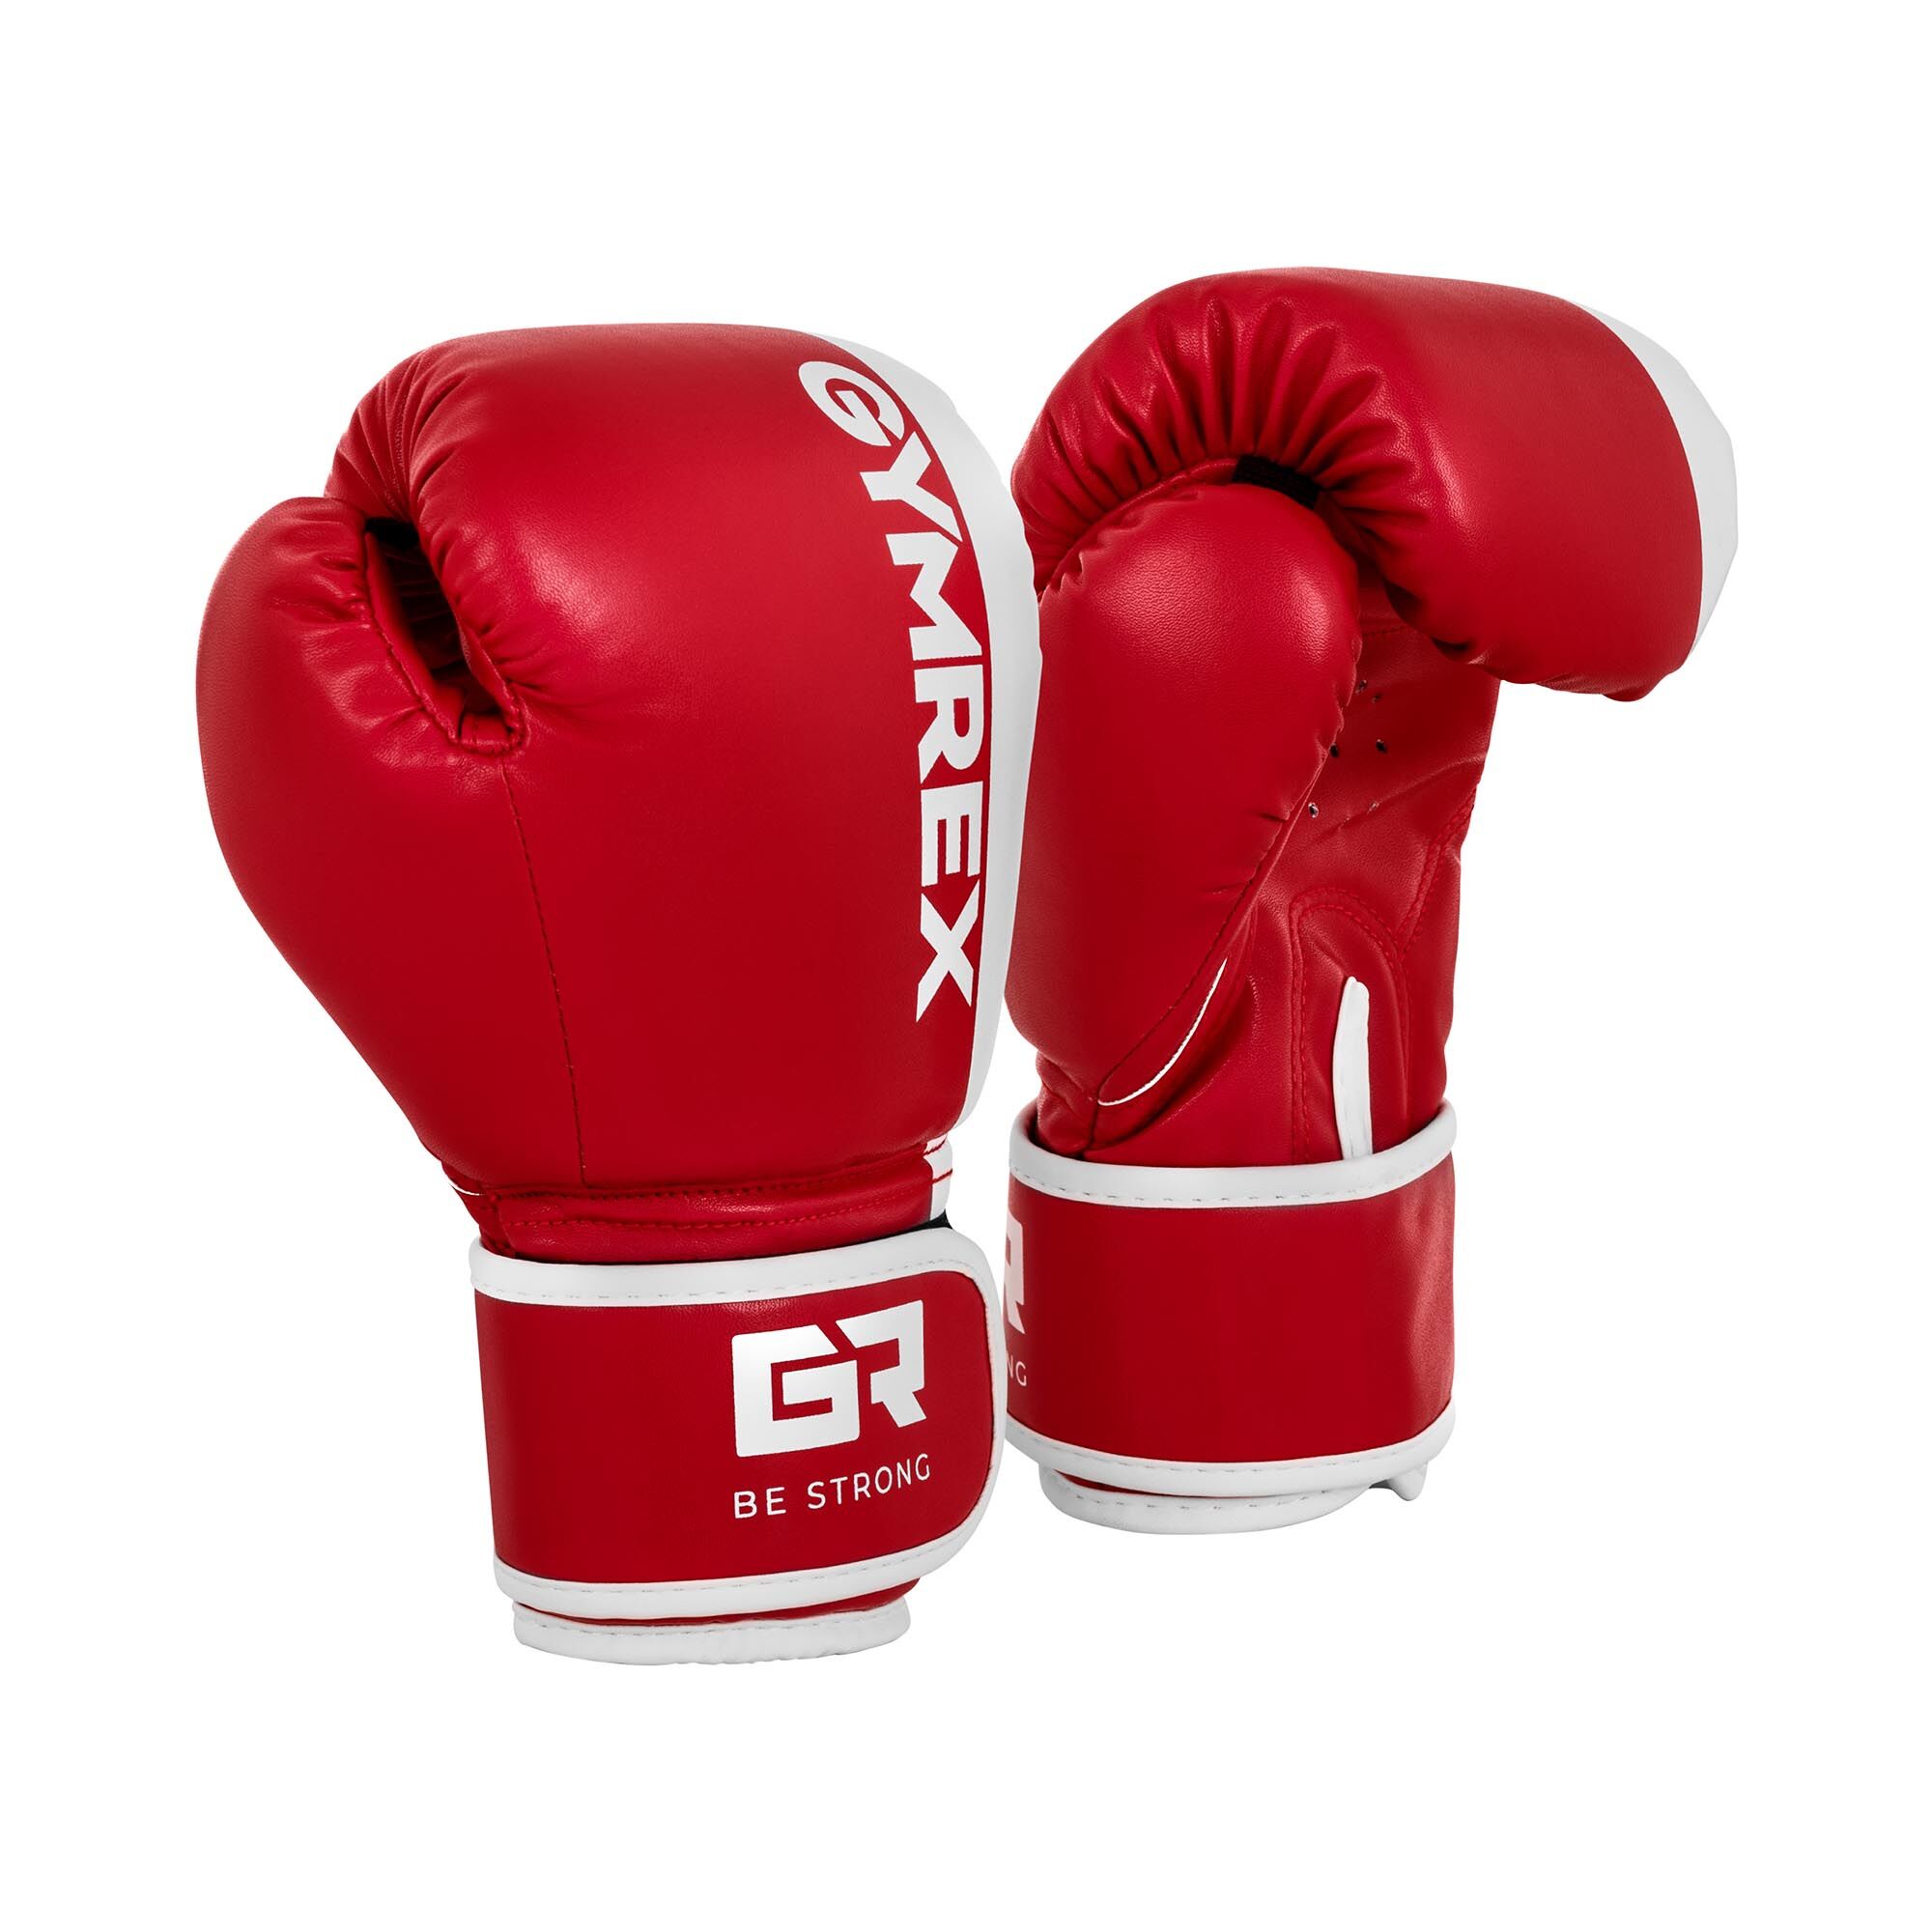 Gymrex Luvas de boxe para crianças - branco e vermelho - 6 oz GR-BG 6B